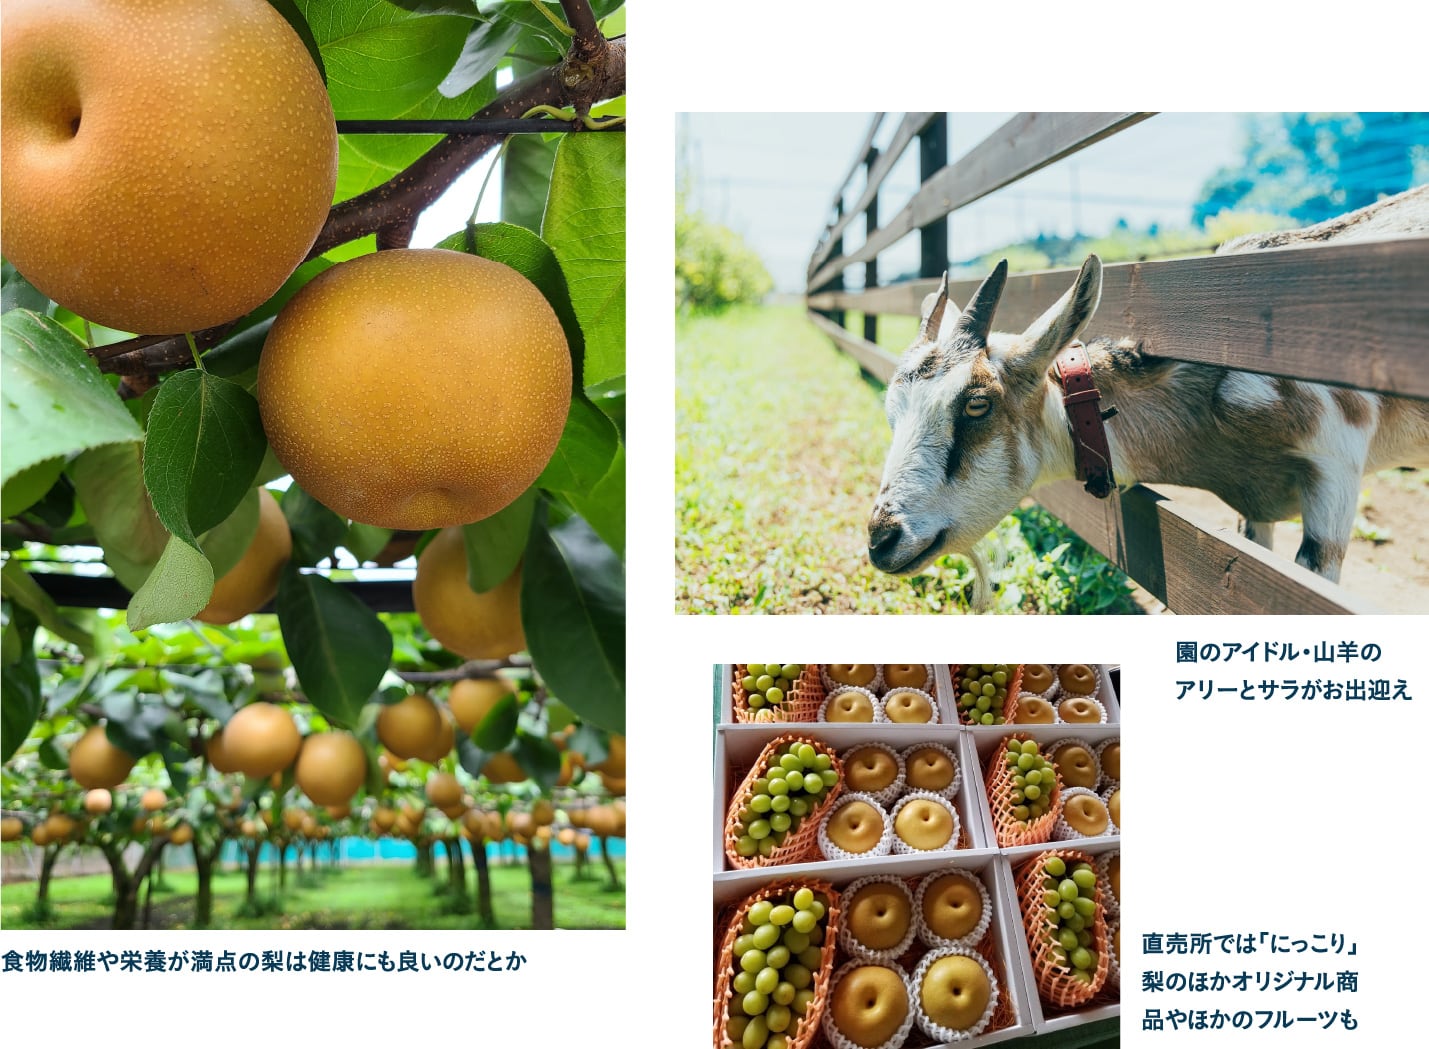 山口果樹園で栃木県の特産品 大きくて甘い「にっこり」梨をゲット